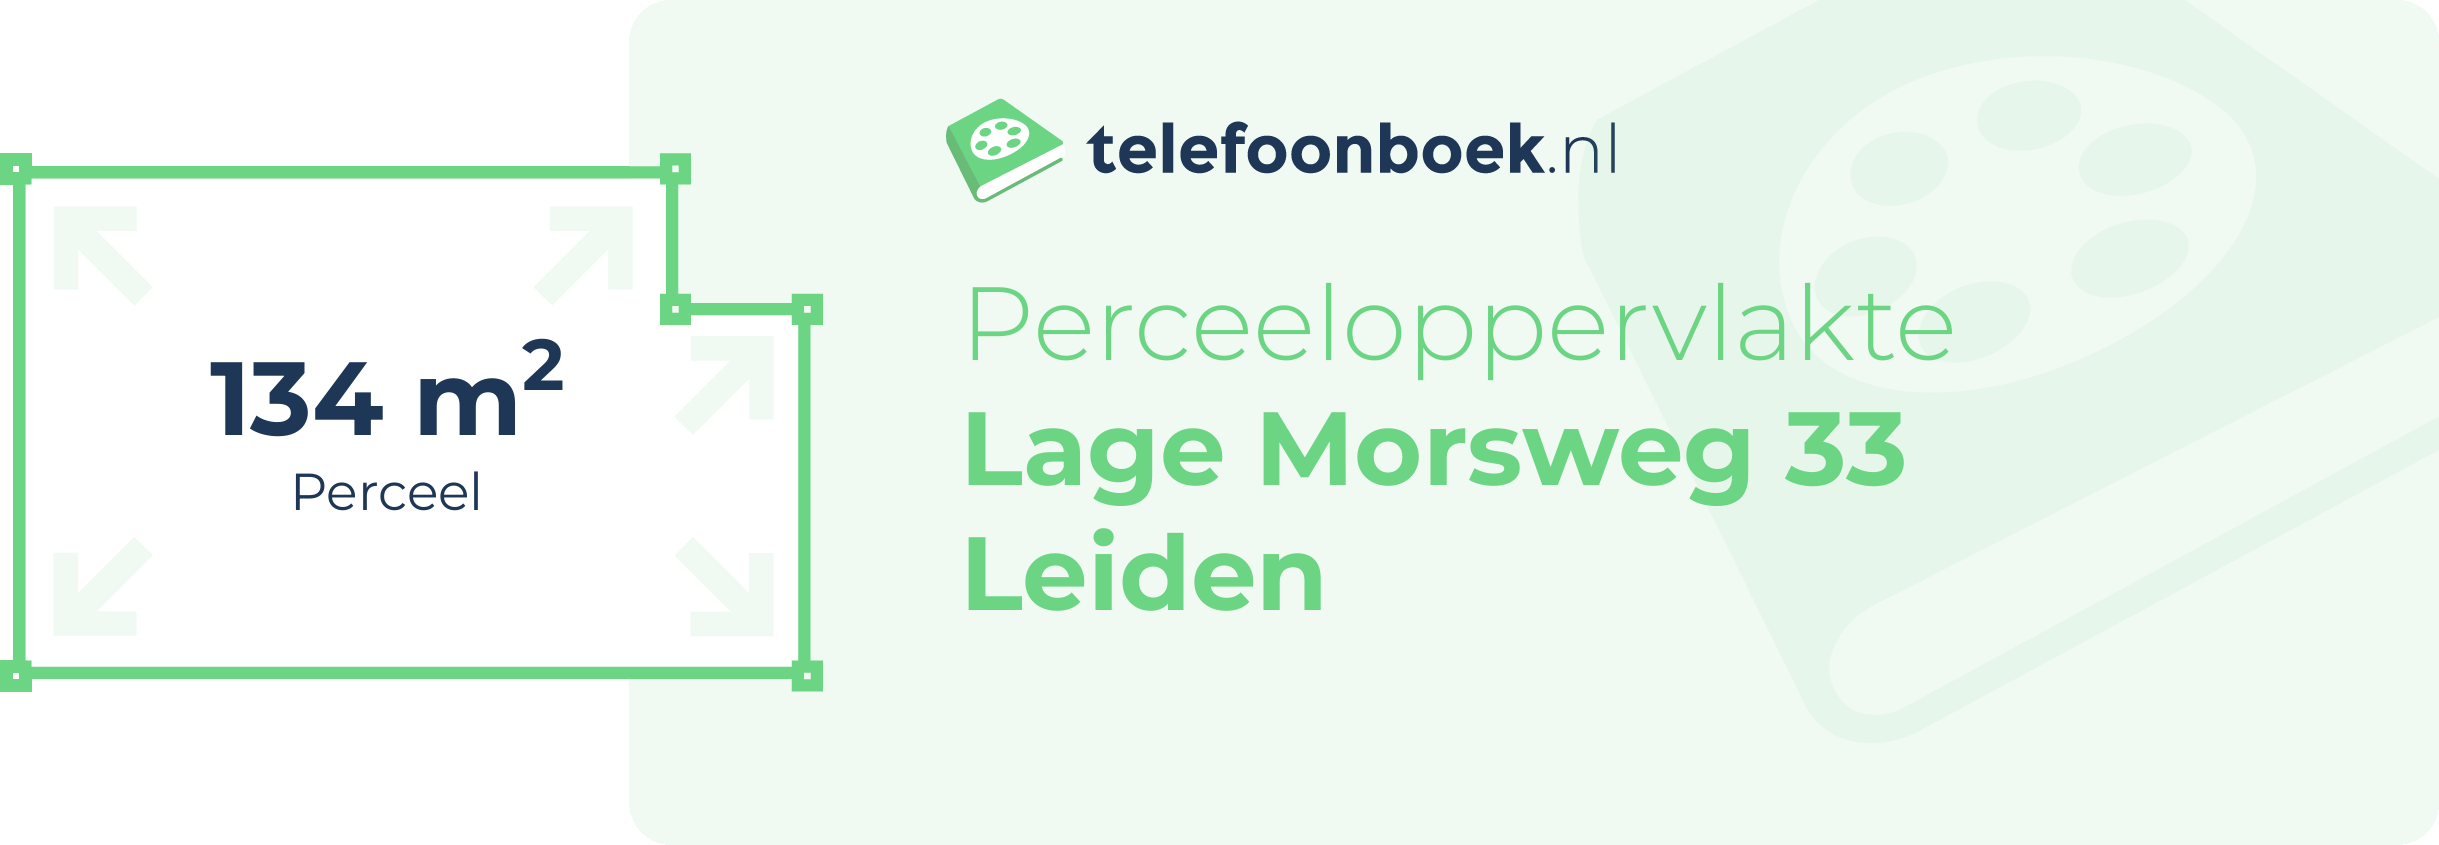 Perceeloppervlakte Lage Morsweg 33 Leiden